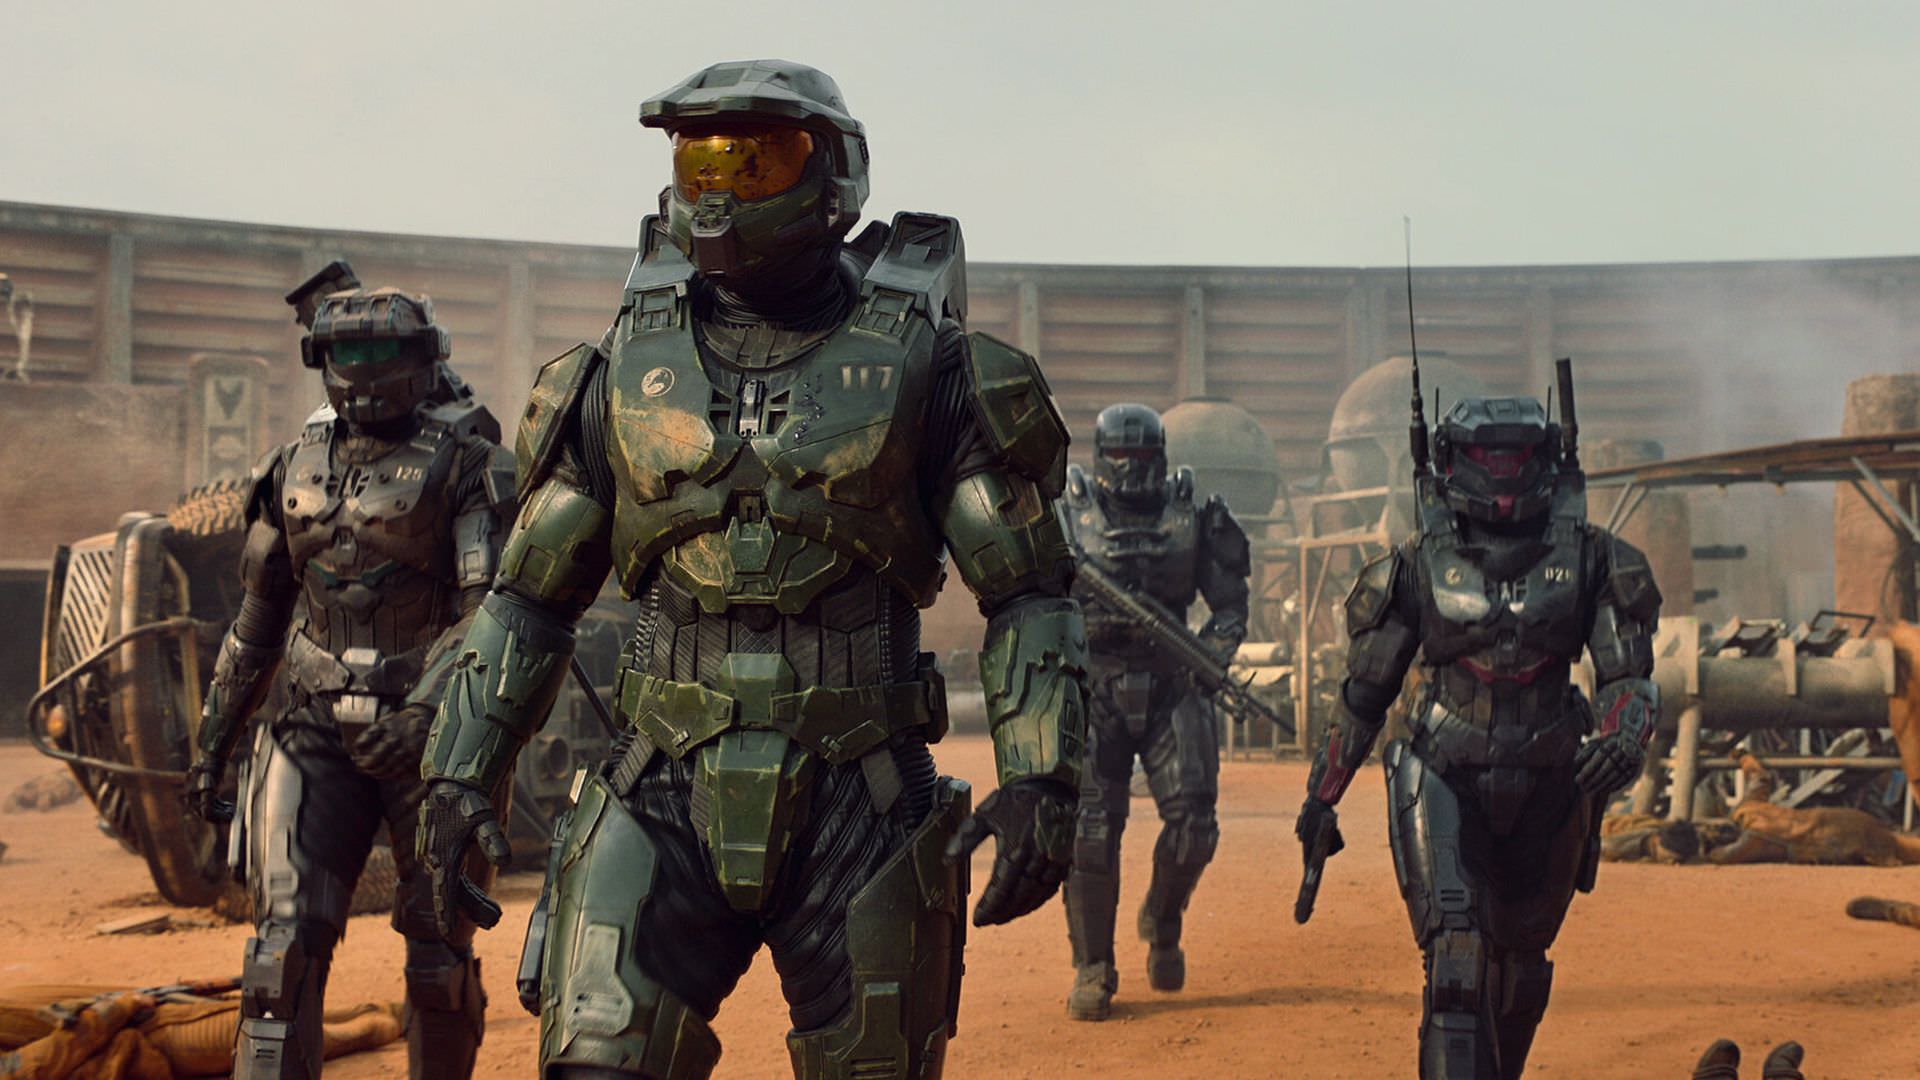 تلاش شورانر سریال Halo برای دوری از ارائه یک اقتباس صرف از بازی هیلو